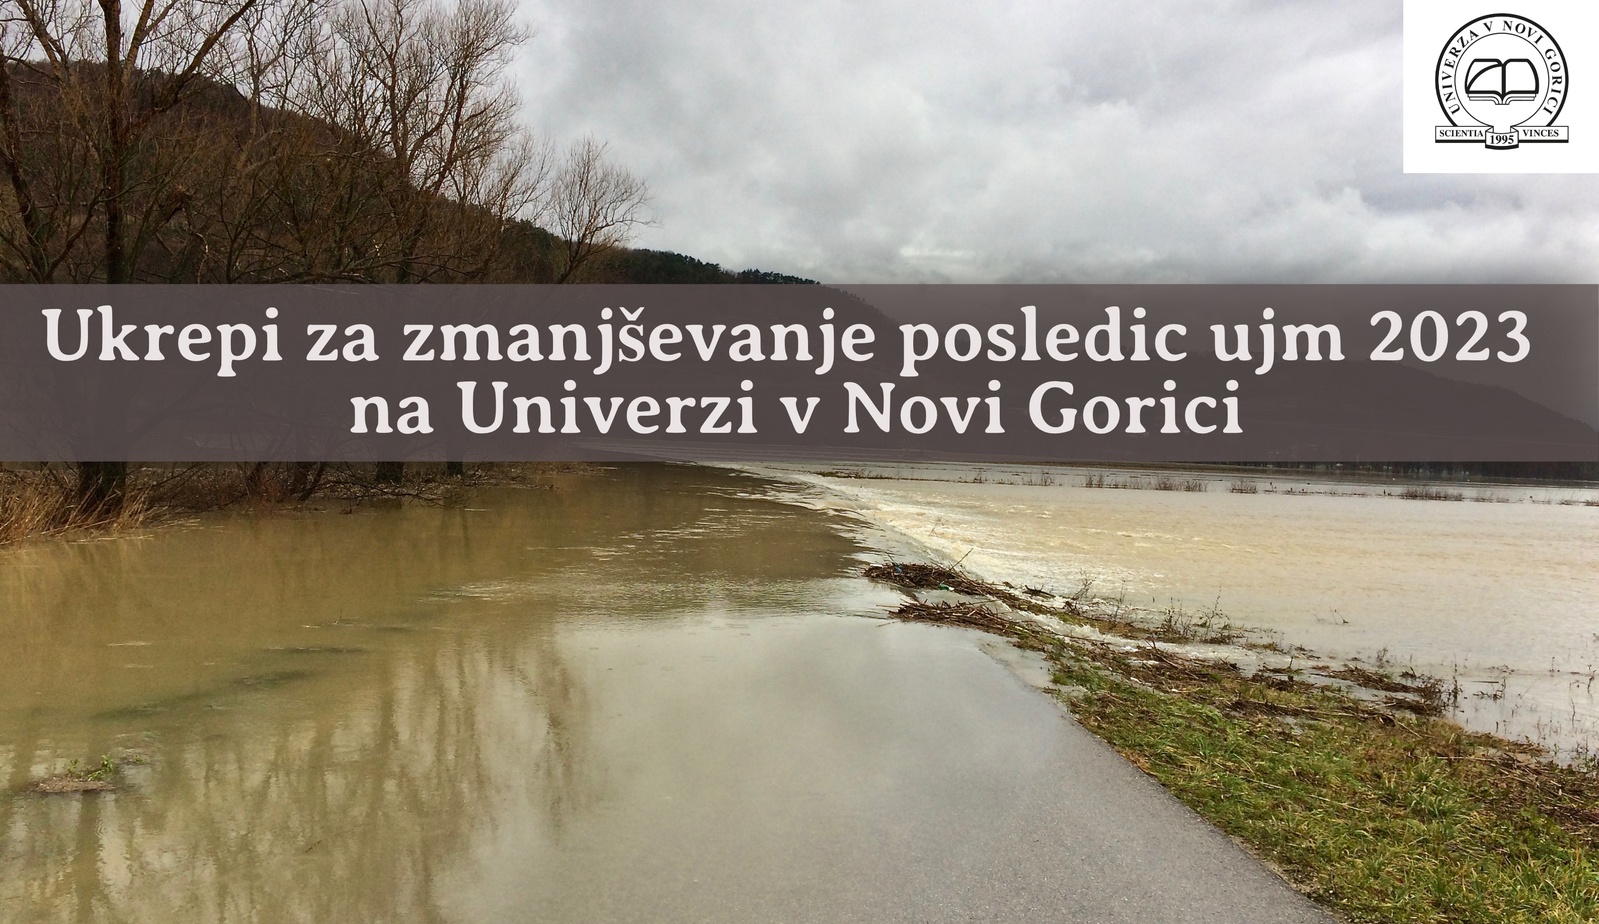 Ukrepi za zmanjševanje posledic ujm 2023 na Univerzi v Novi Gorici